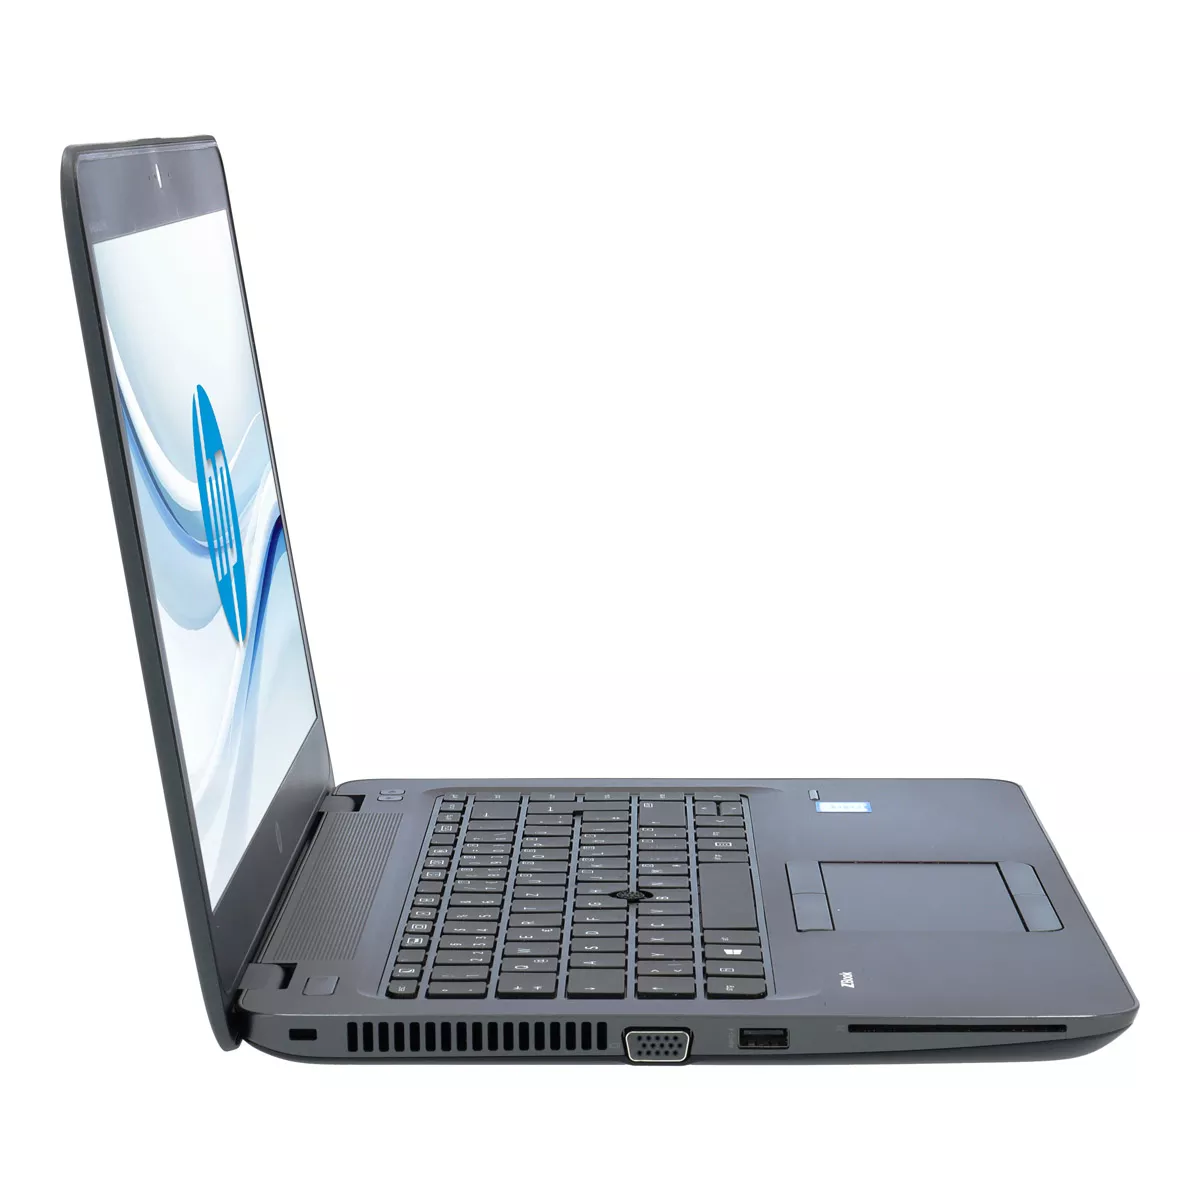 HP ZBook 14u G4 Core i7 7600U 16 GB DDR4 500 GB M.2 nVME SSD Webcam A